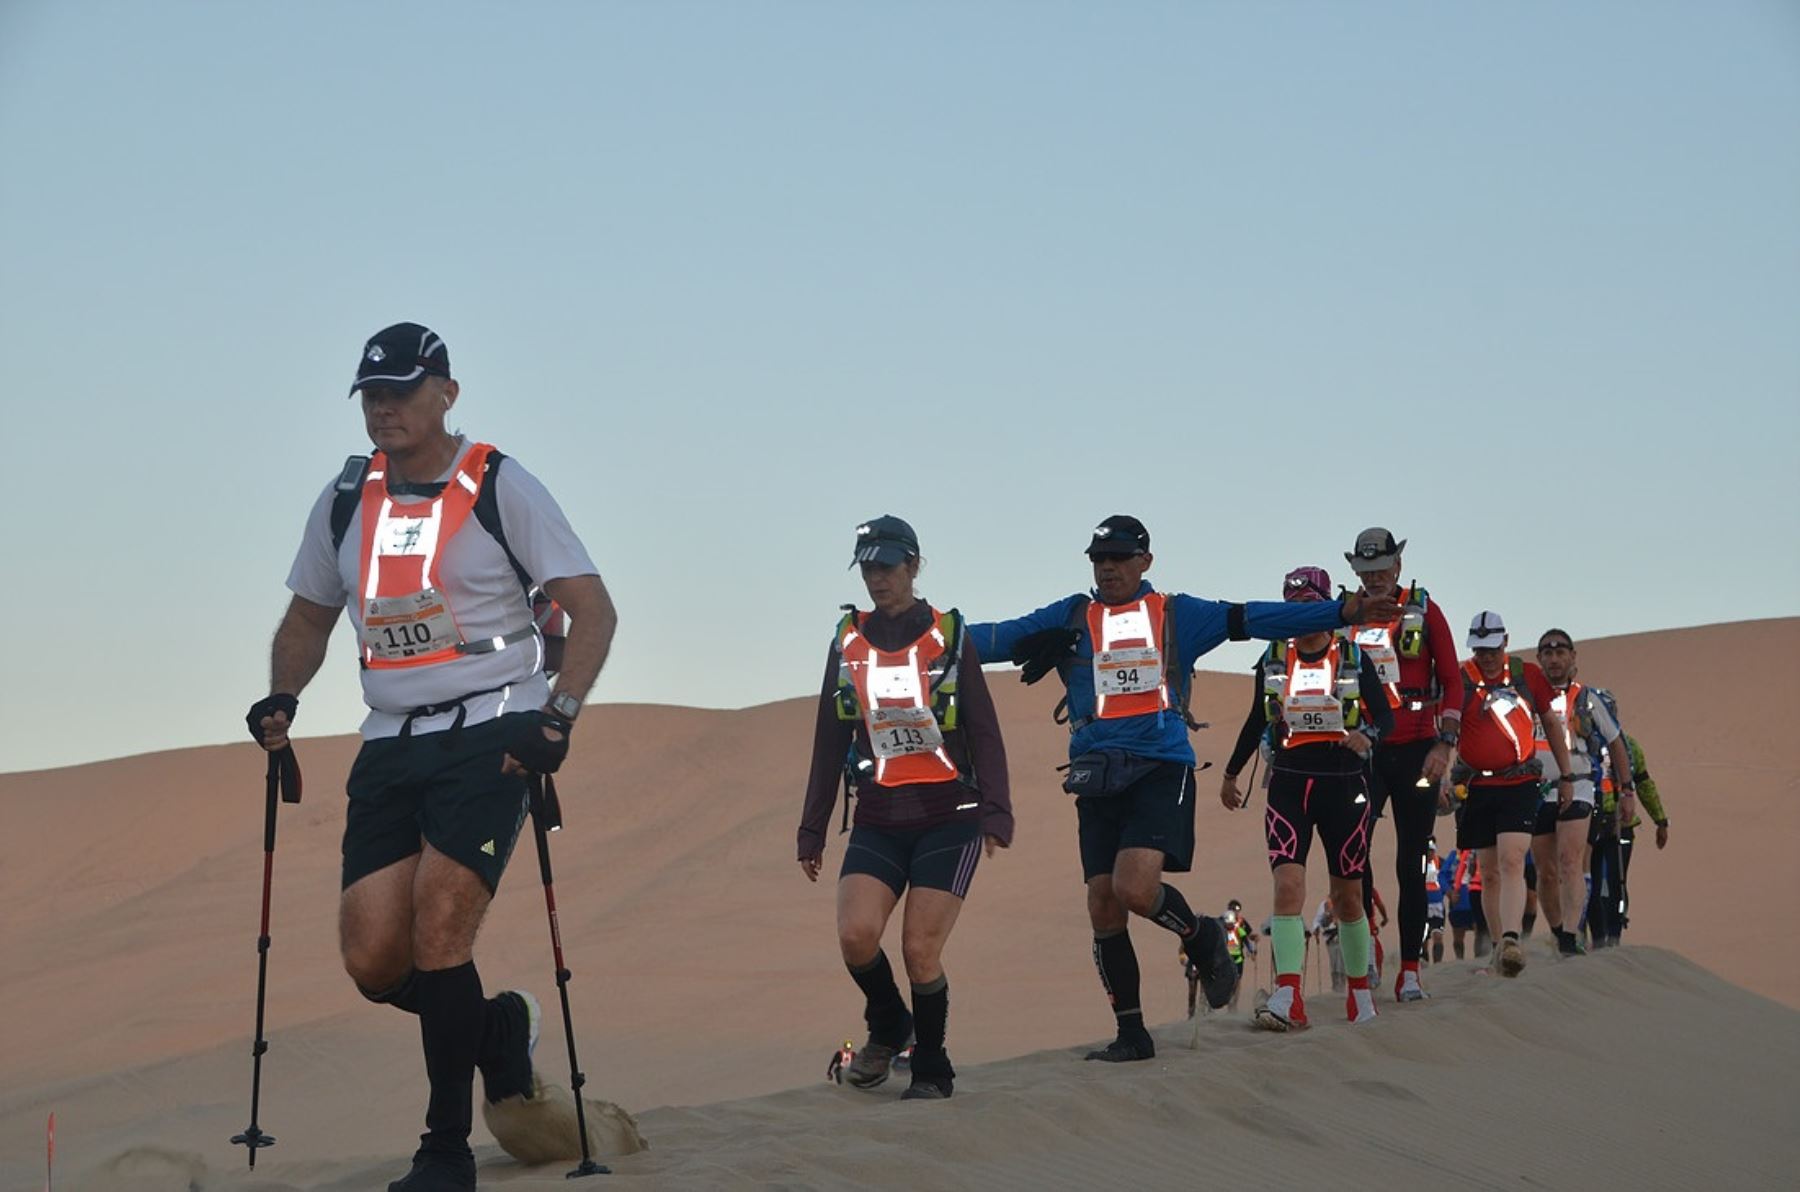 Este 16 de julio se realizará por cuarta vez consecutiva la competencia internacional “Perú 8mil Desert Challenge 2016”, que tendrá como escenario la Reserva Nacional de Paracas, área natural protegida administrada por el Servicio Nacional de Áreas Naturales Protegidas por el Estado (Sernanp).